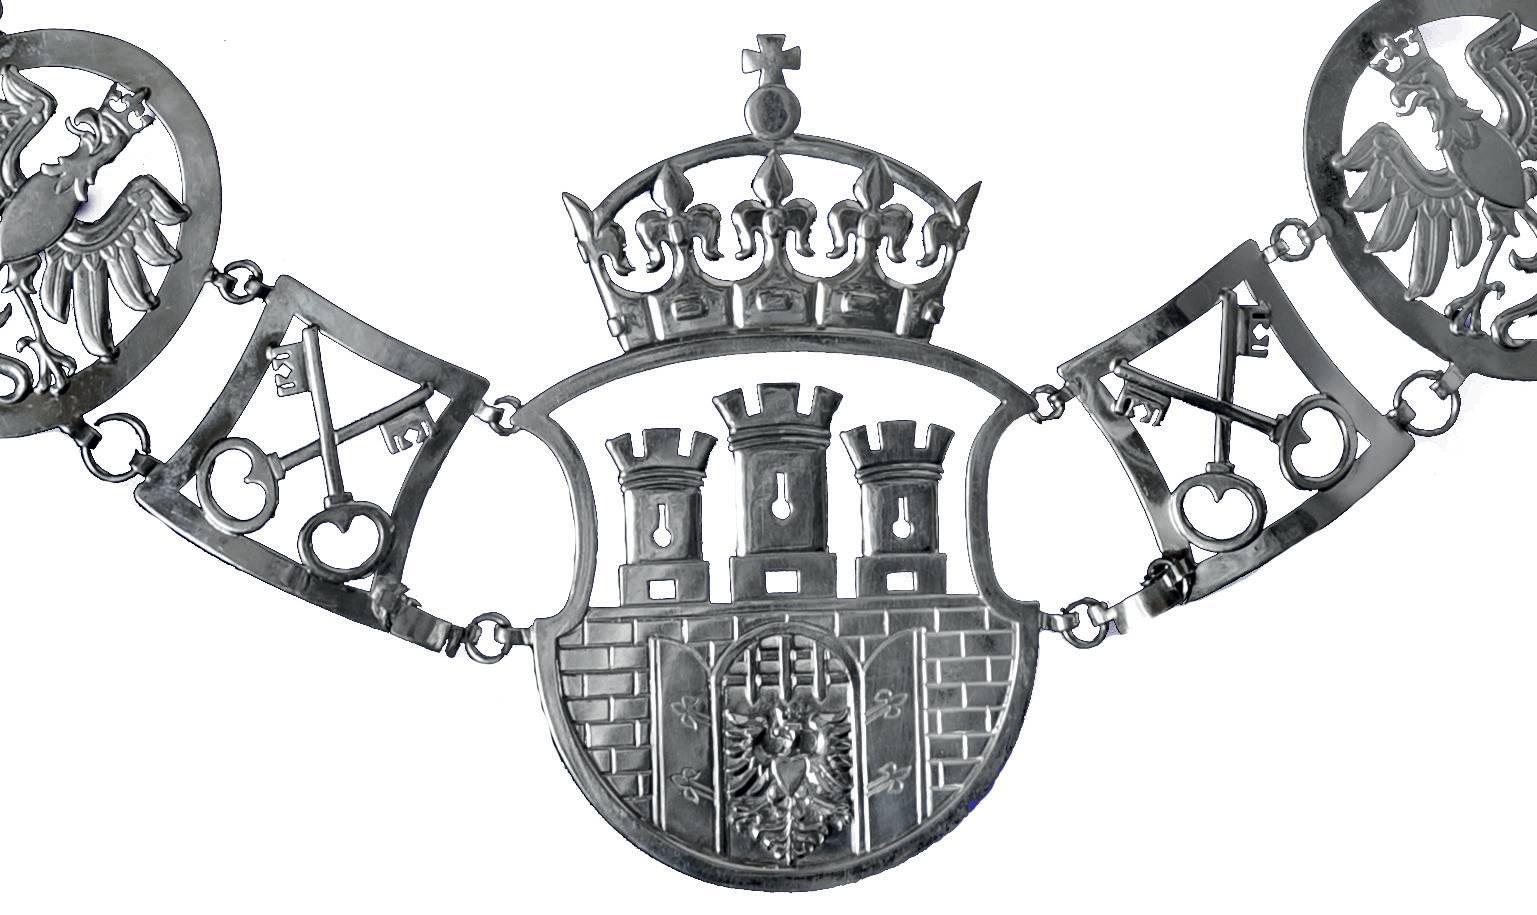 (043) Herb Krakowa według obowiązującego wzoru – główne ogniwo posrebrzanego
łańcucha, wykonanego w 2010 r. insygnium przewodniczącego Rady Miasta Krakowa – cały
łańcuch zob. il. 387 (z wyposażenia RMK)